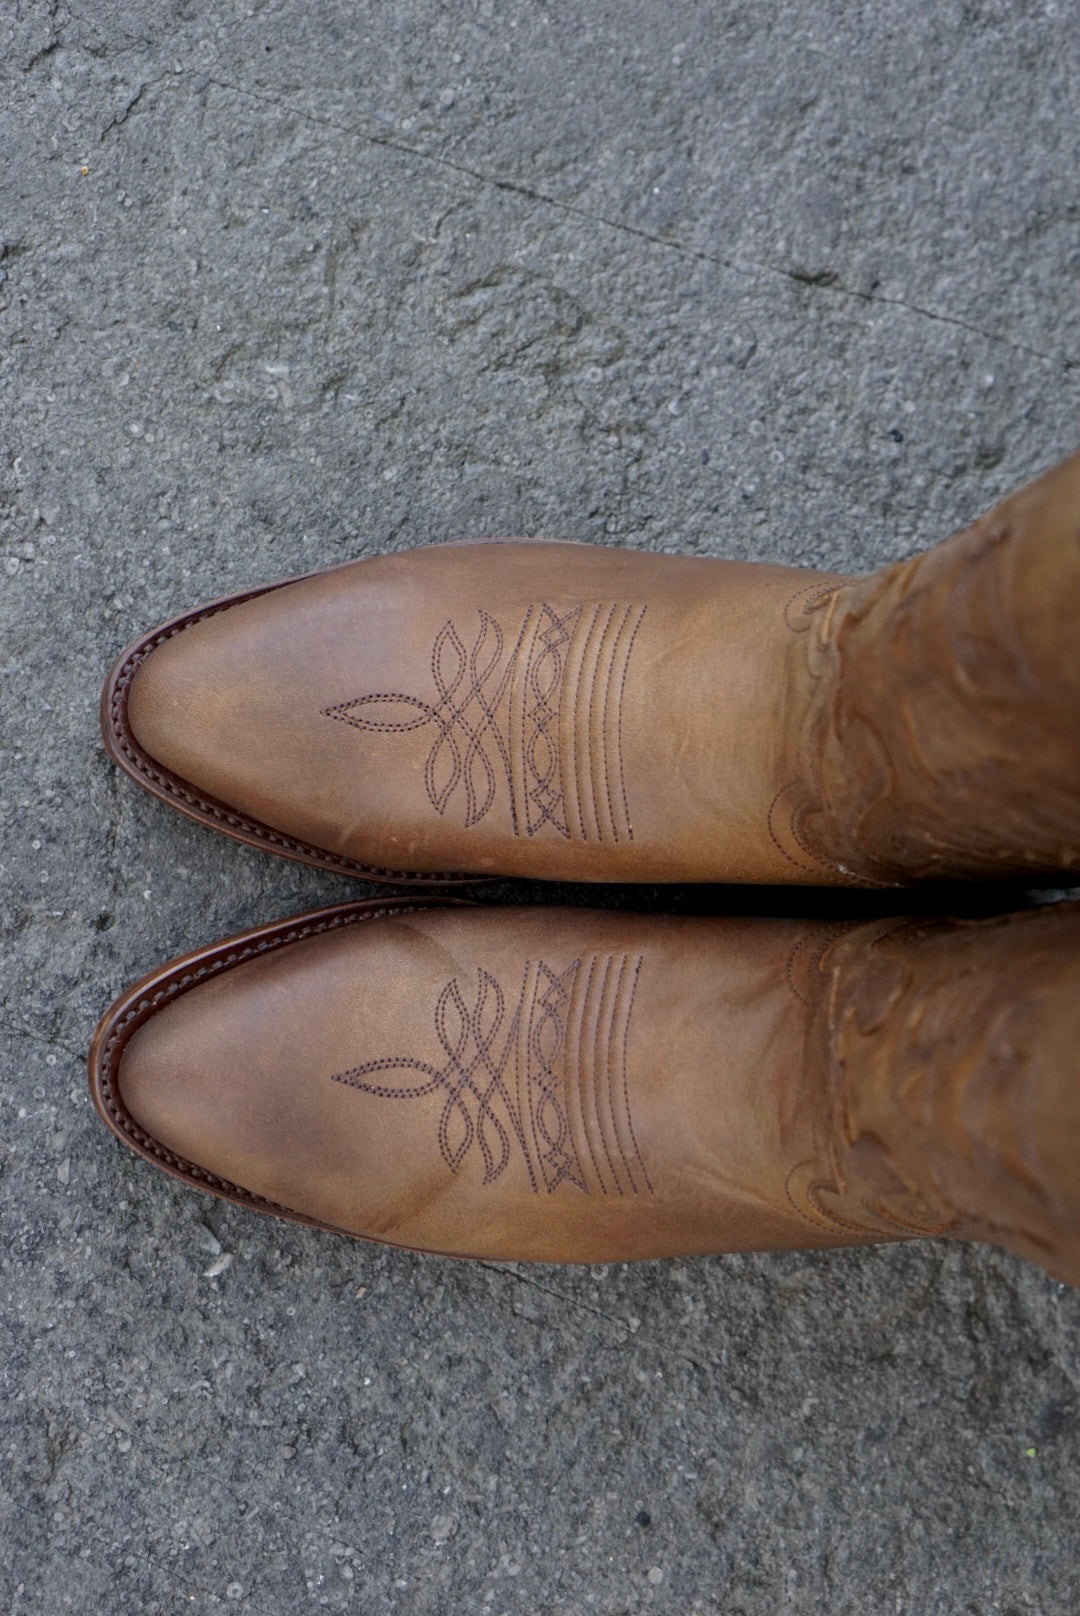 Yankee cowboy boots - tang